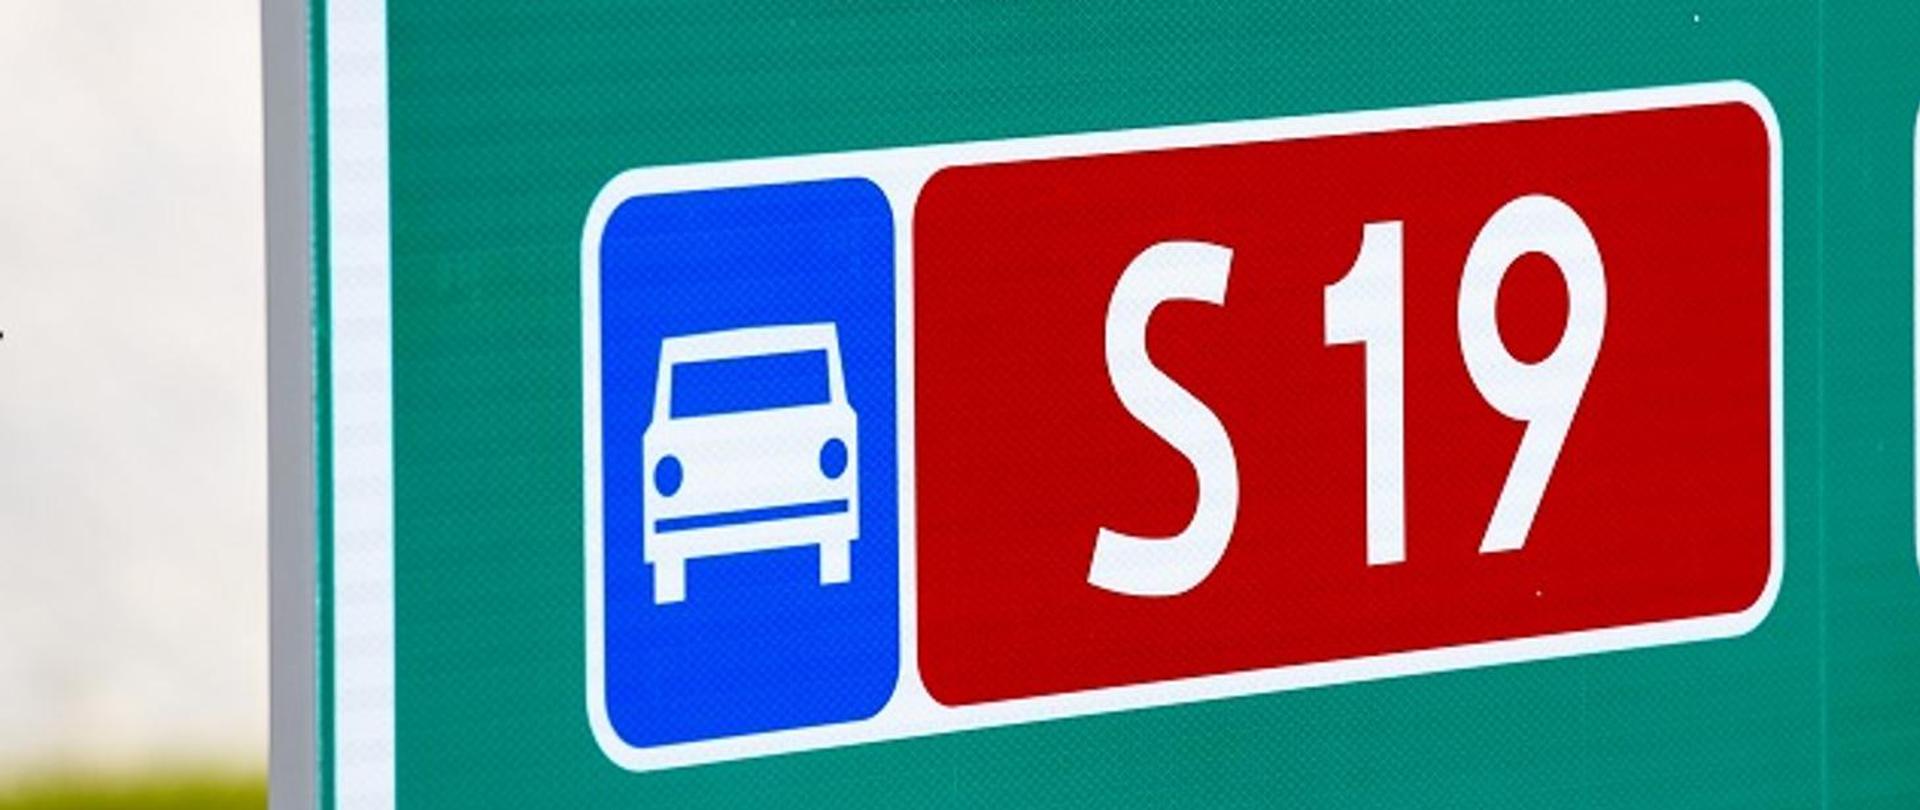 Zbliżenie tablicy kierunkowej z oznaczeniem drogi ekspresowej nr S19